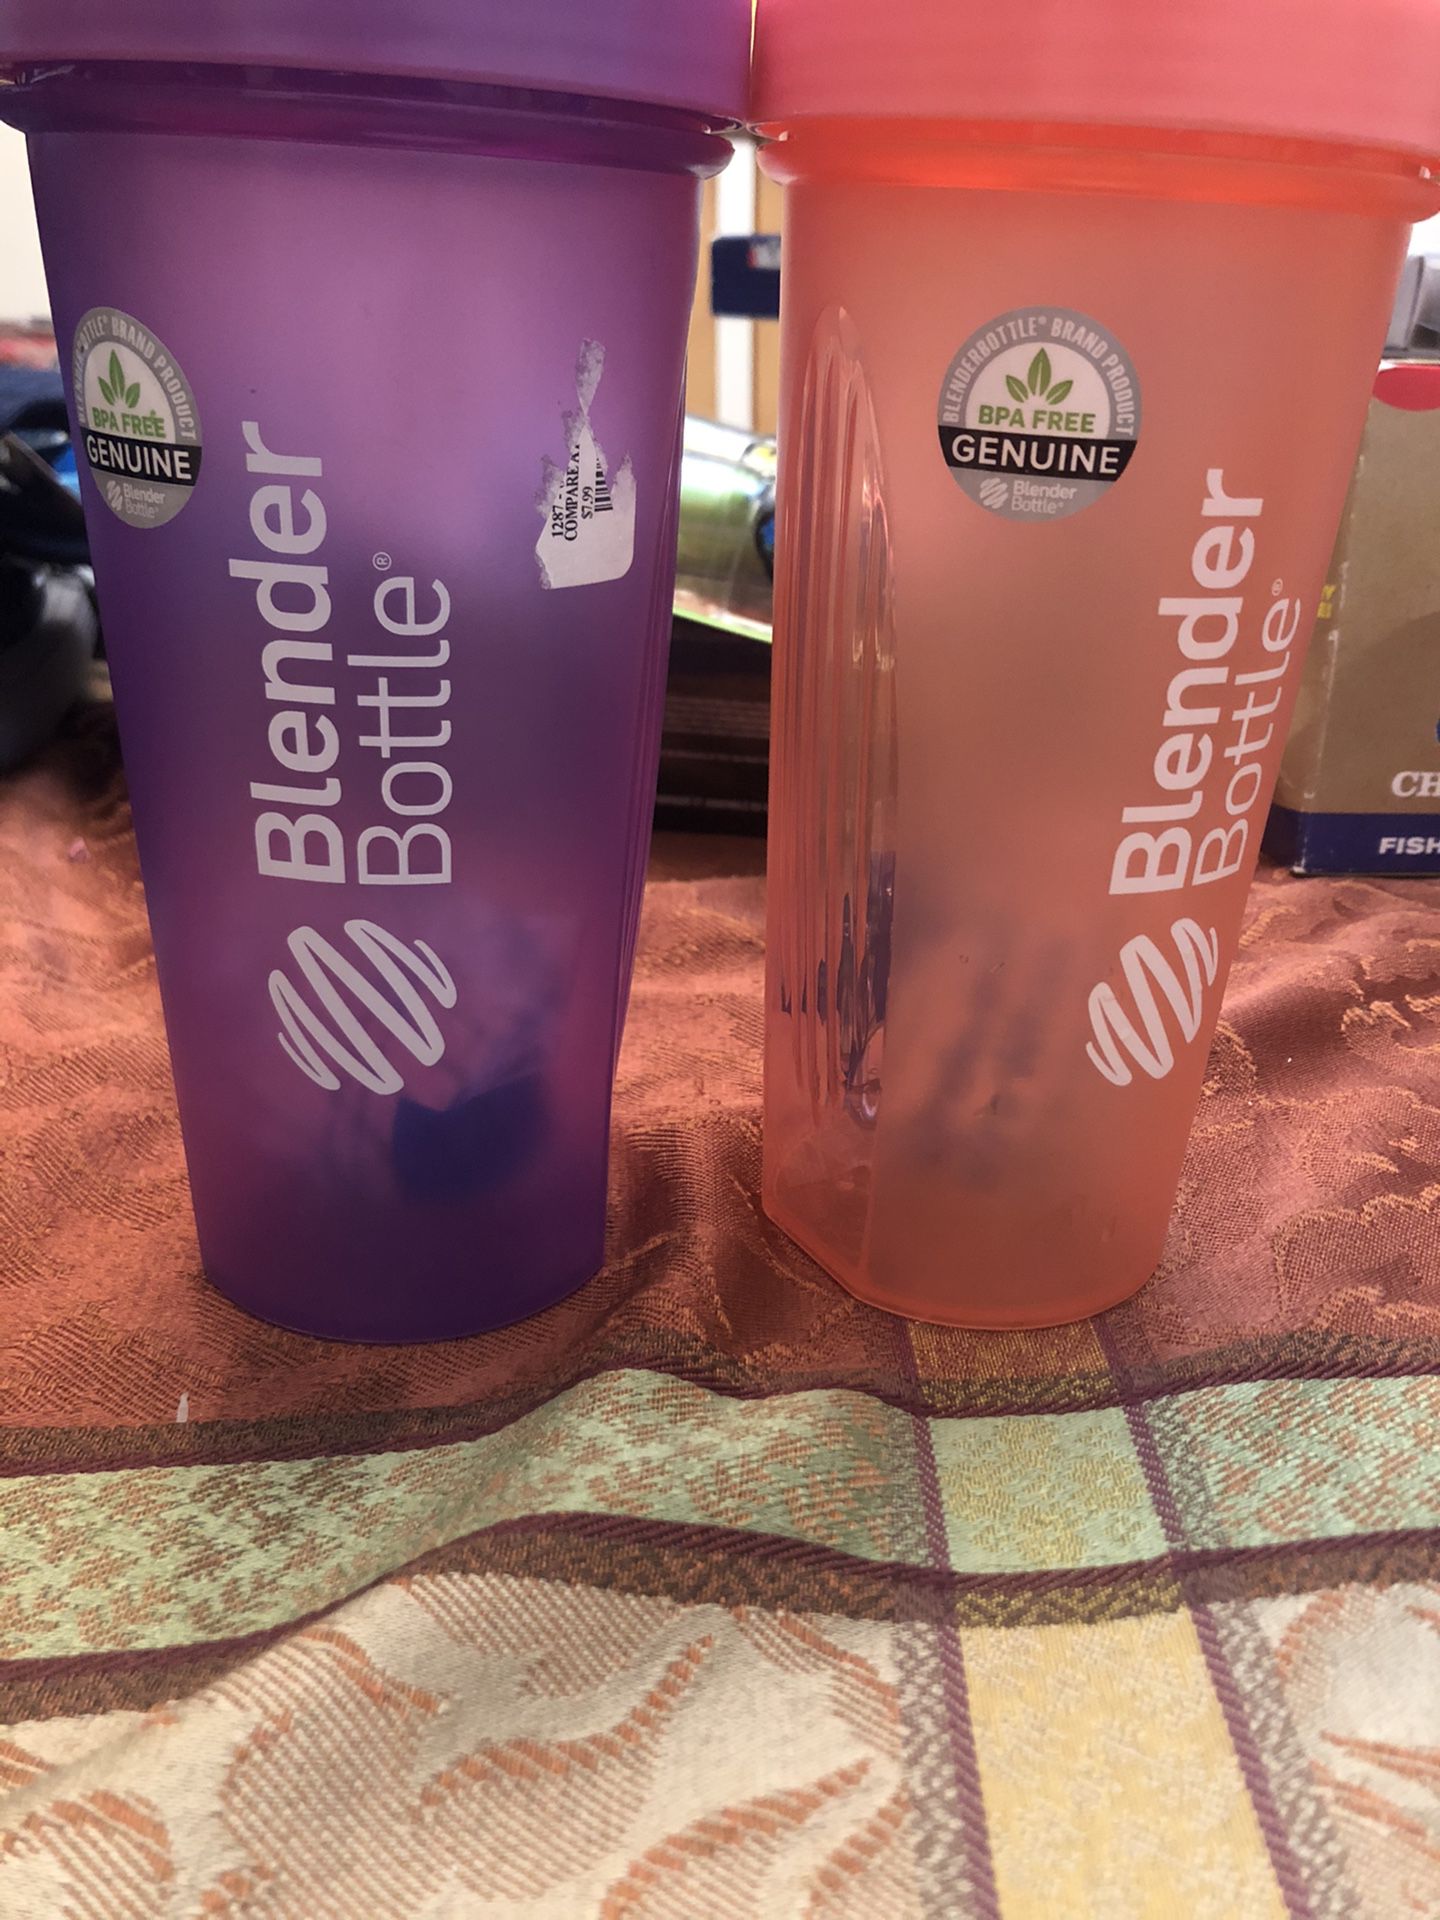 Two new blender bottles